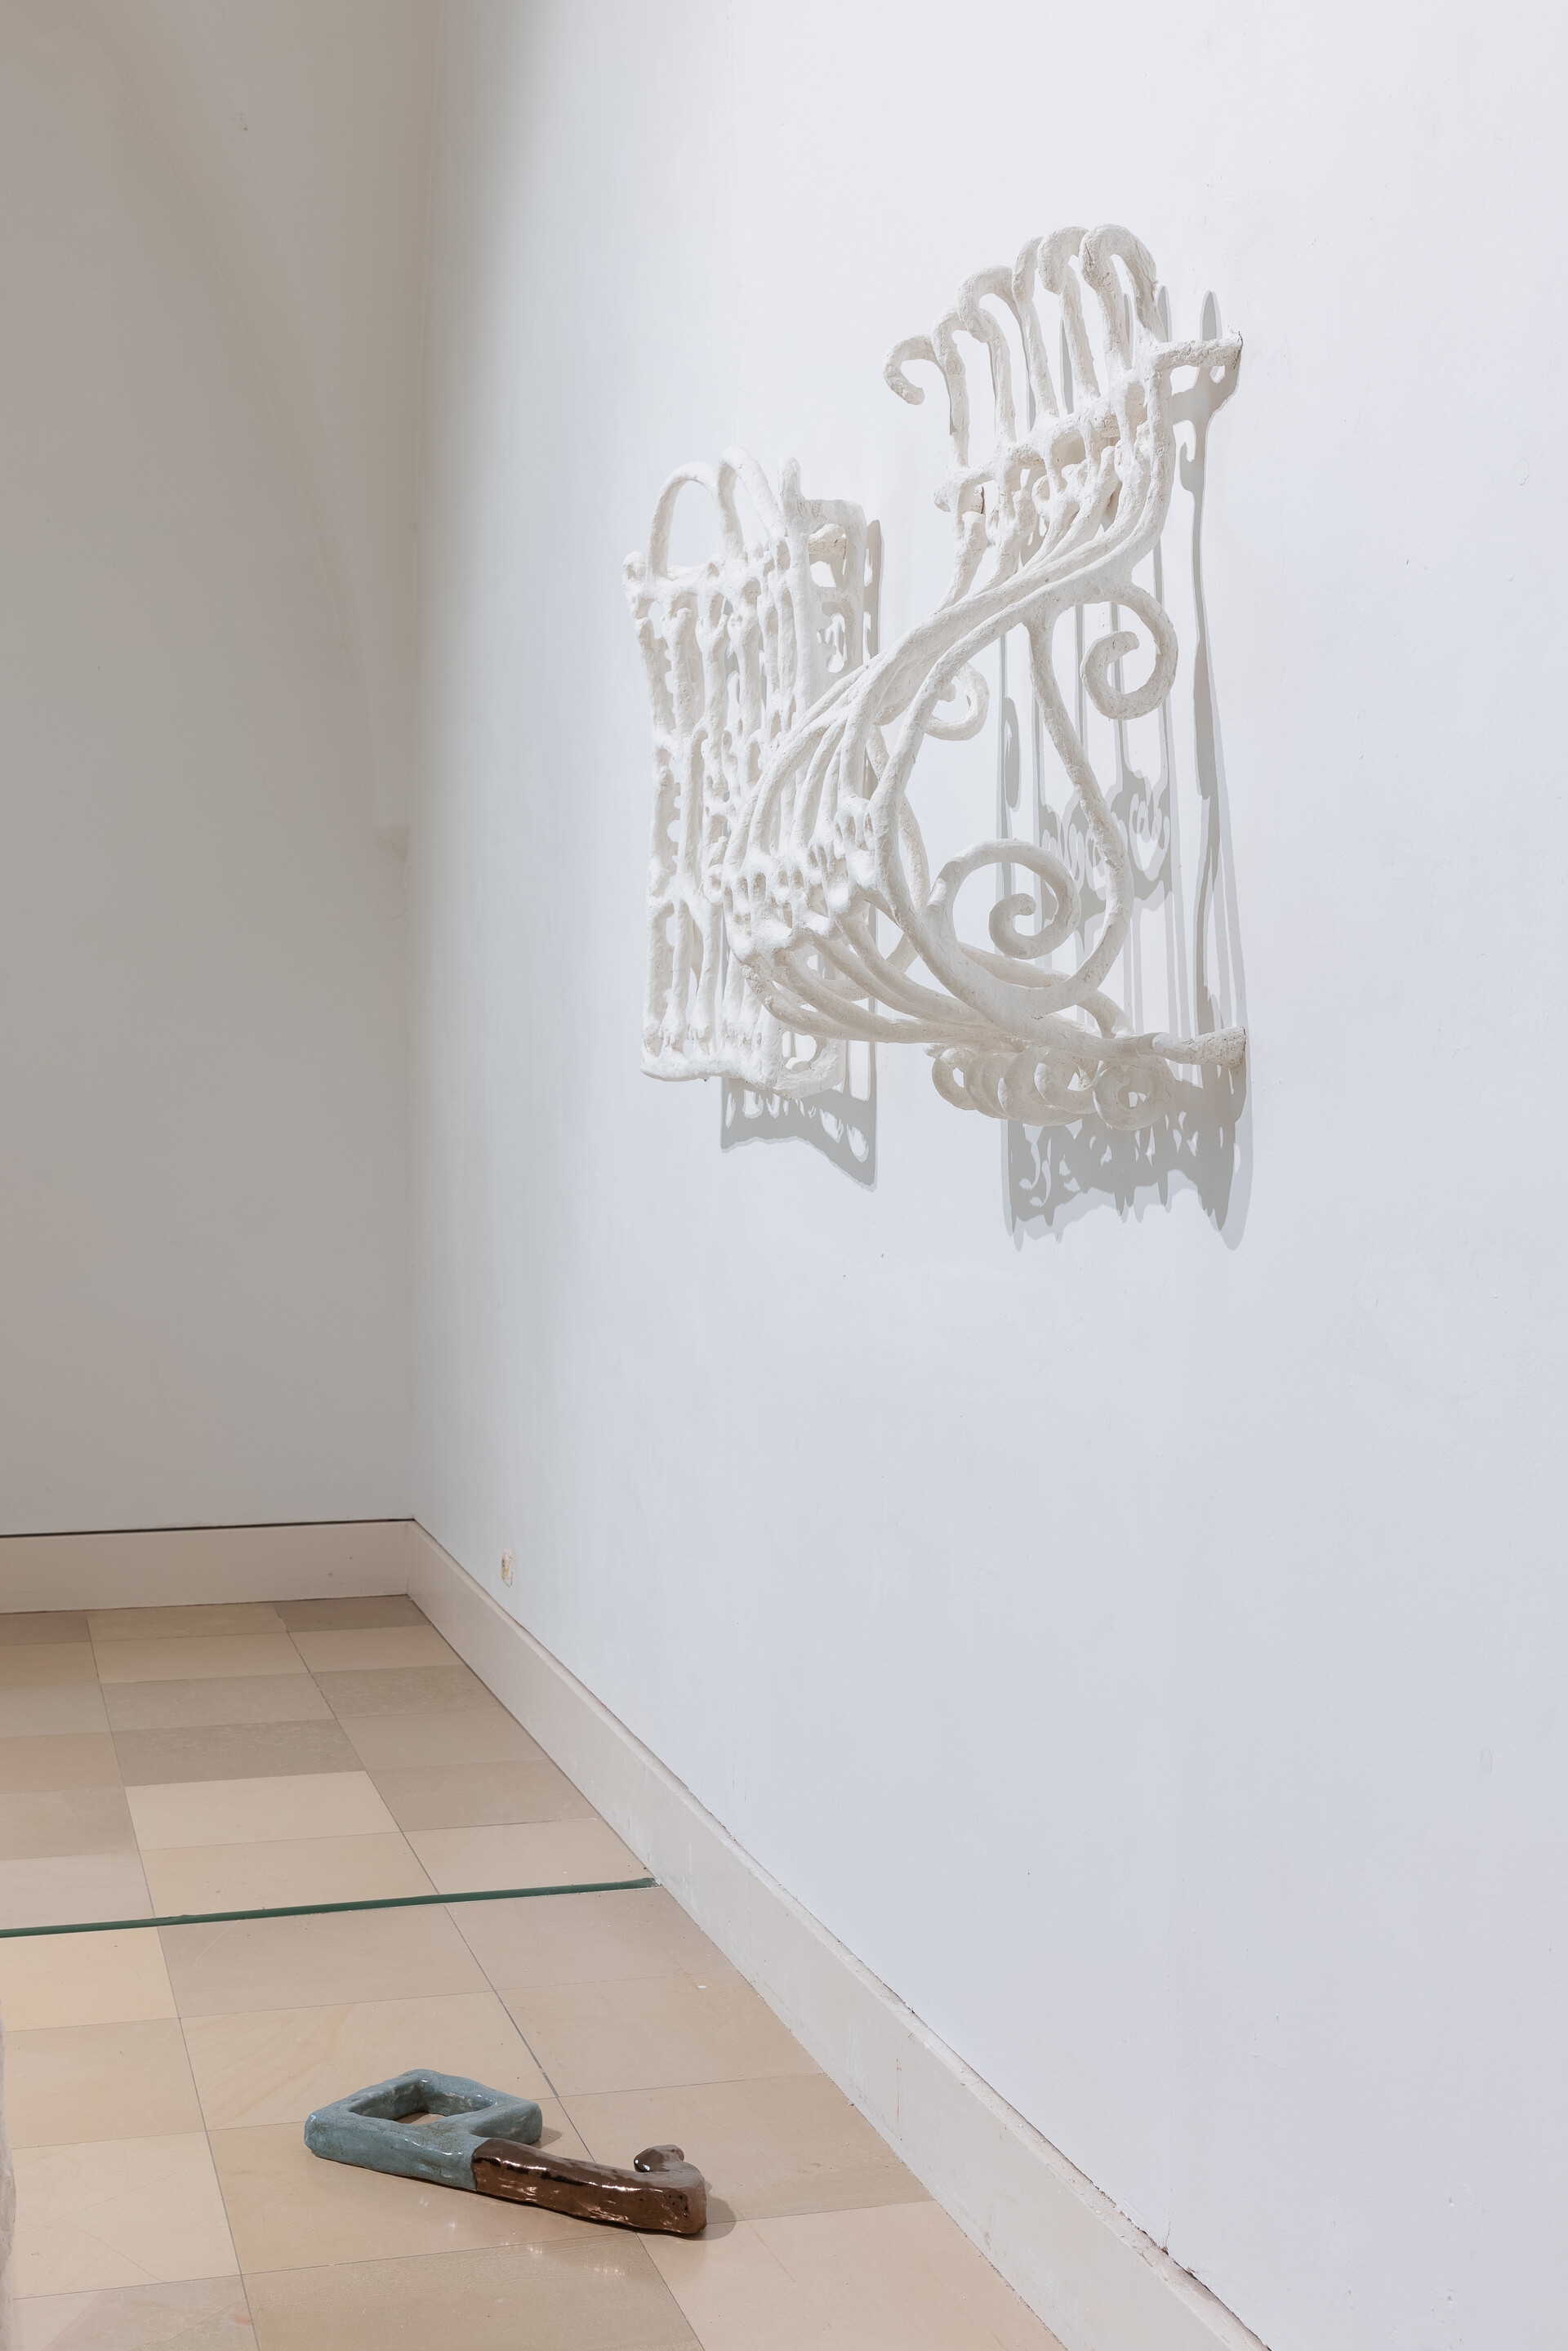 Fenstergitter Saragossa, 124×99×21cm, 2021 (Wire, Paper), Schlüssel 2, 59×19×6cm, 2021 (Glazed ceramics), Fenstergitter Granada, 122×98×56cm, 2021 (Paper, Wire)